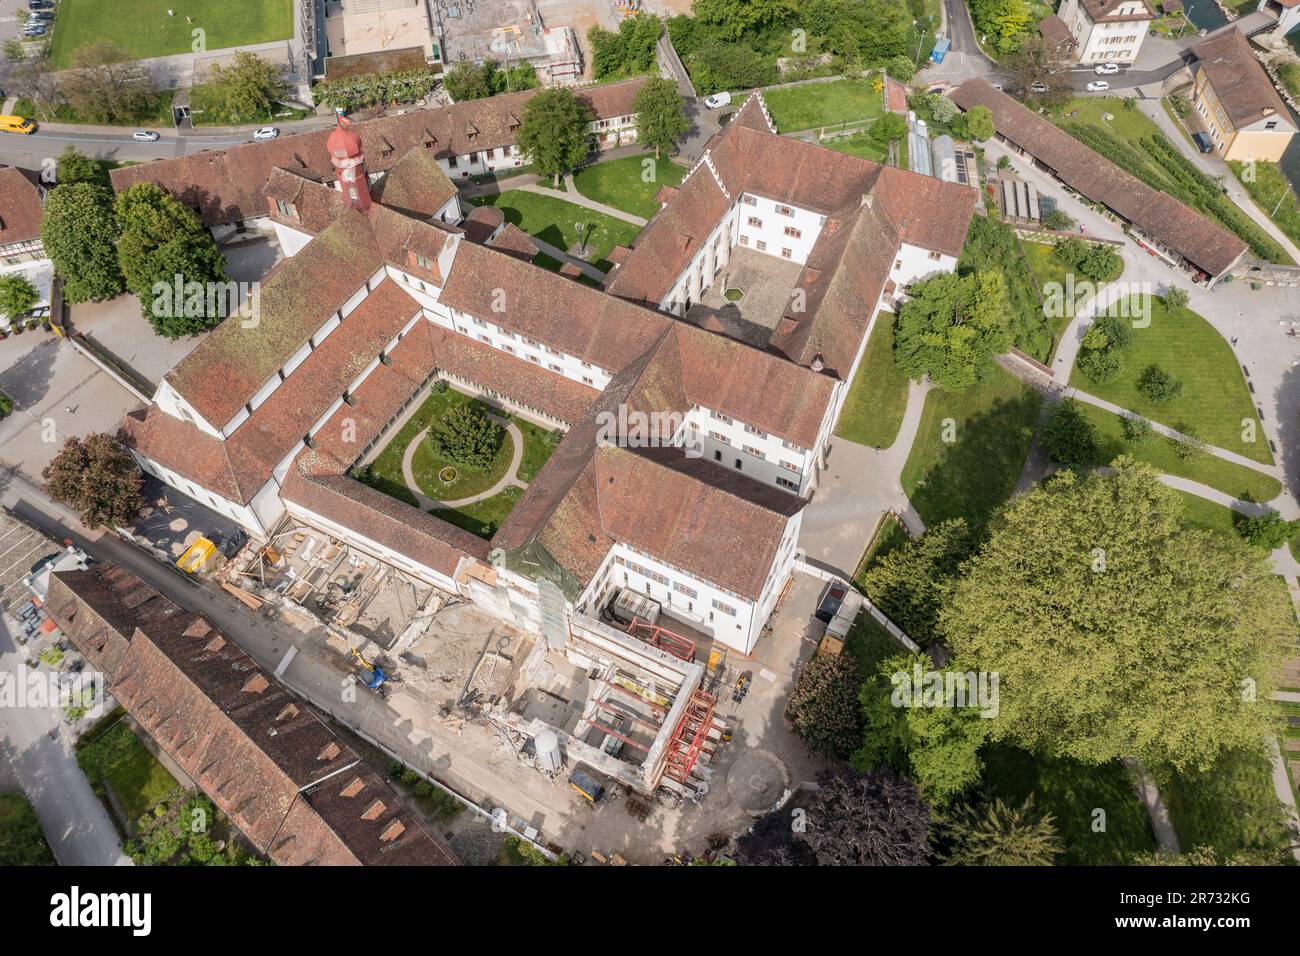 Jardin du monastère de Wettingen, presqu'île de Wettingen, rivière Limmat, vue aérienne, Argau, Suisse. Banque D'Images